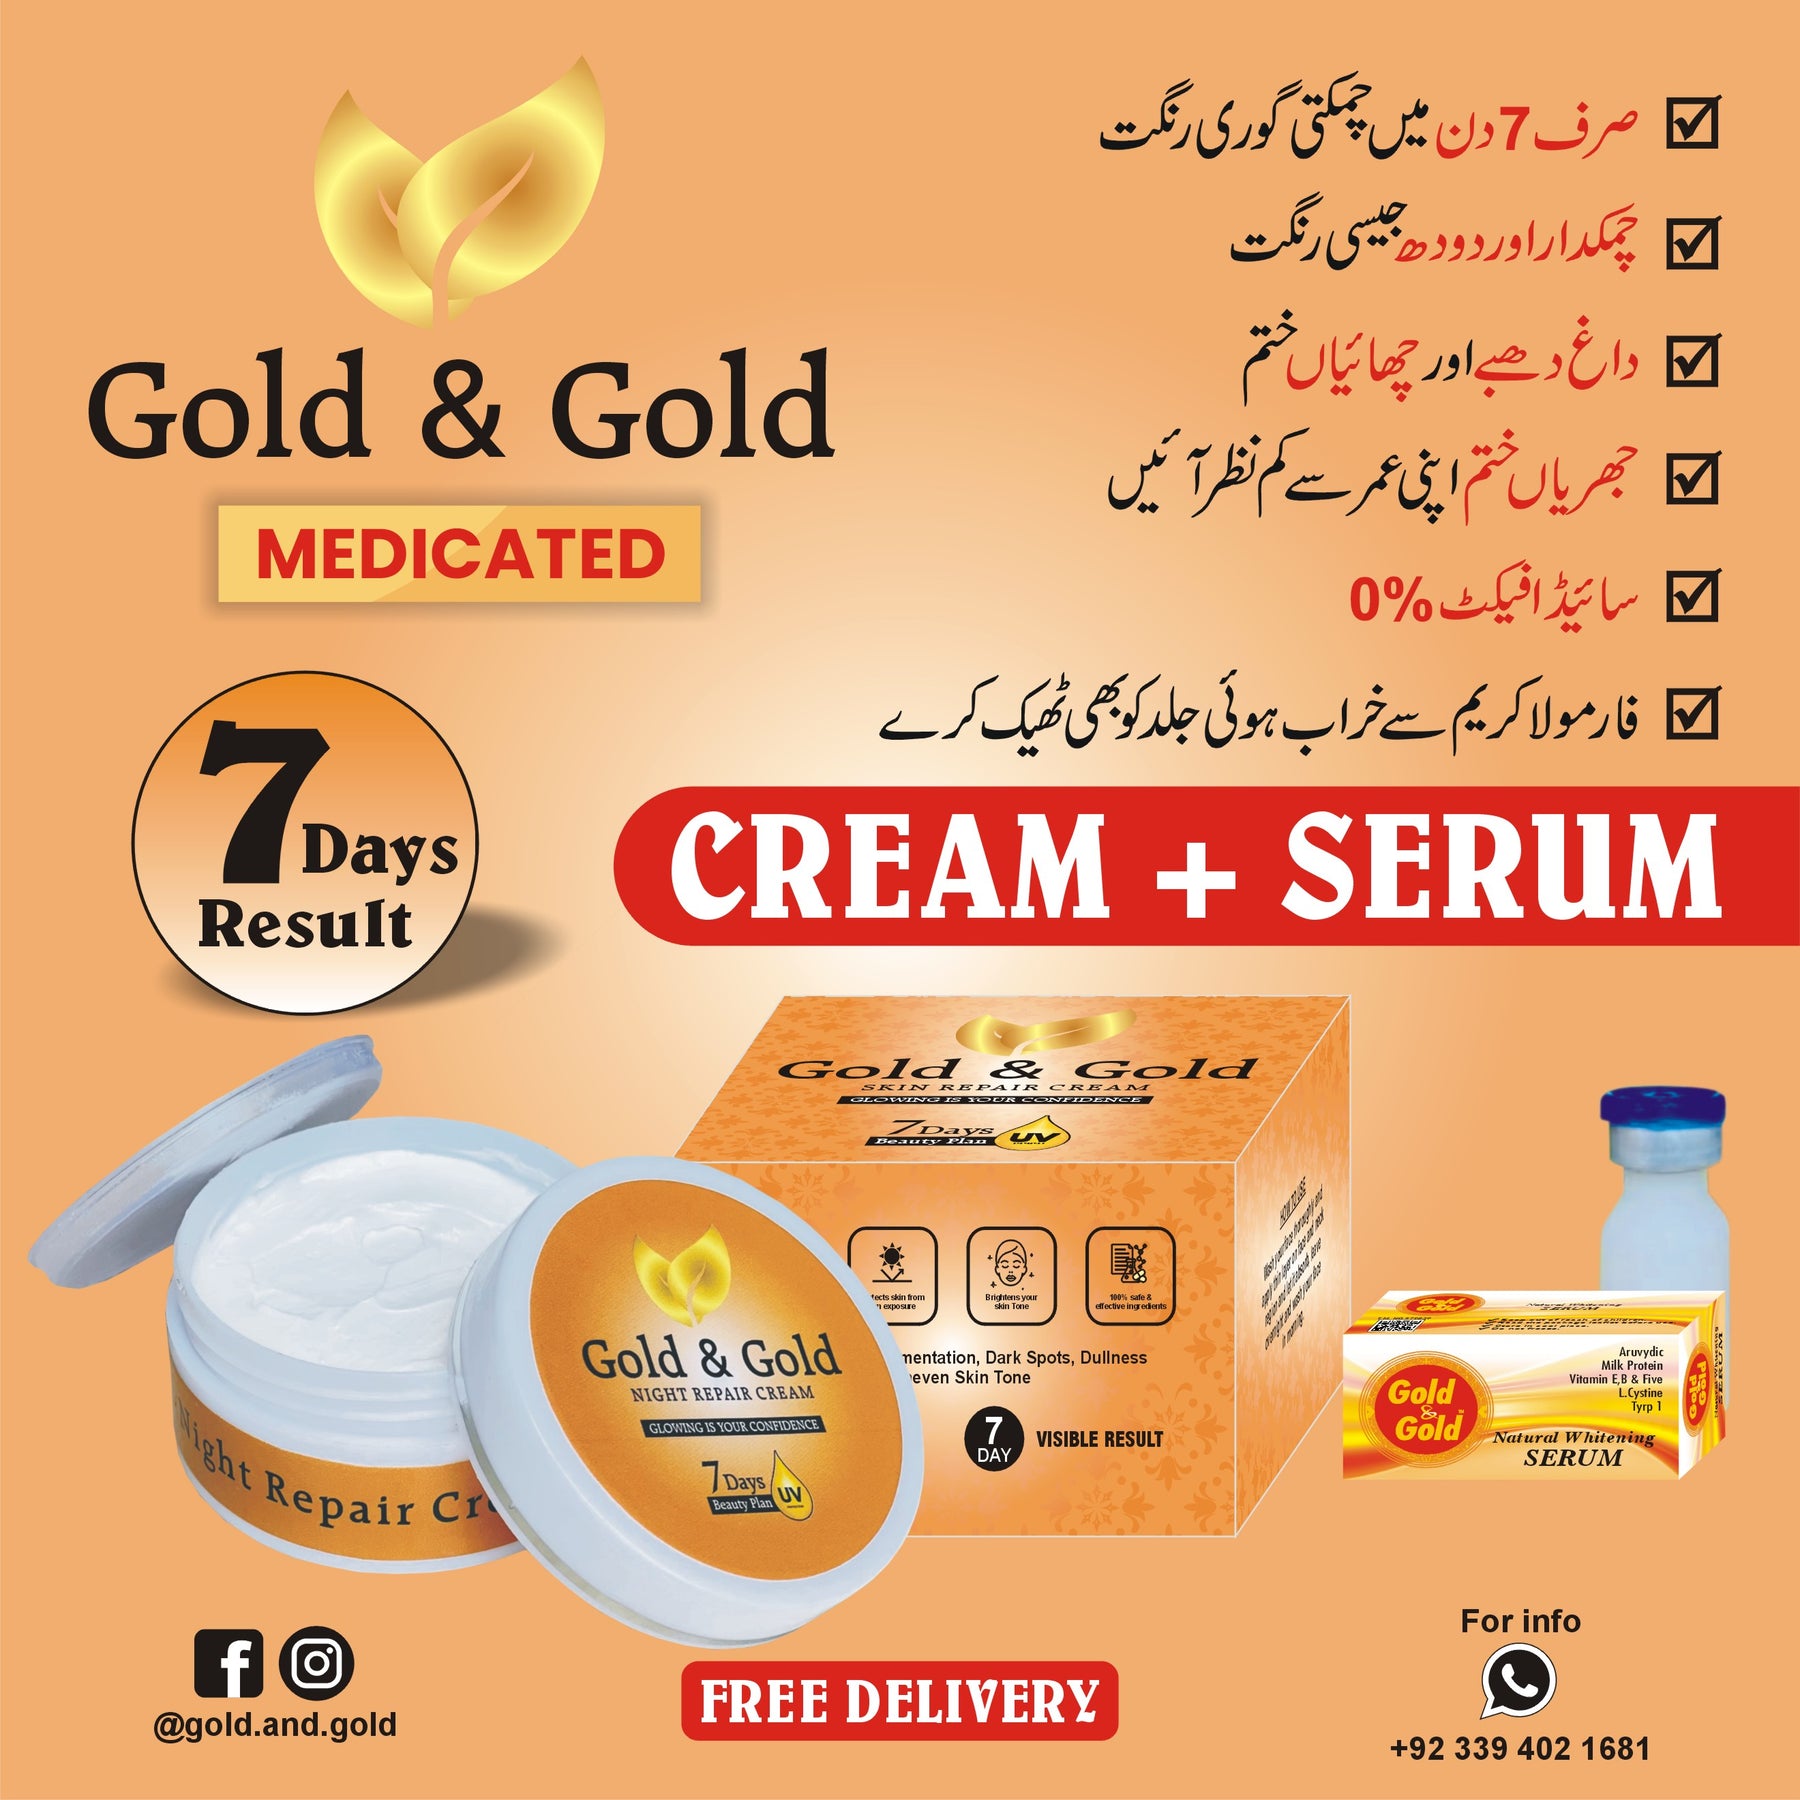 Night Repair Cream + Serum